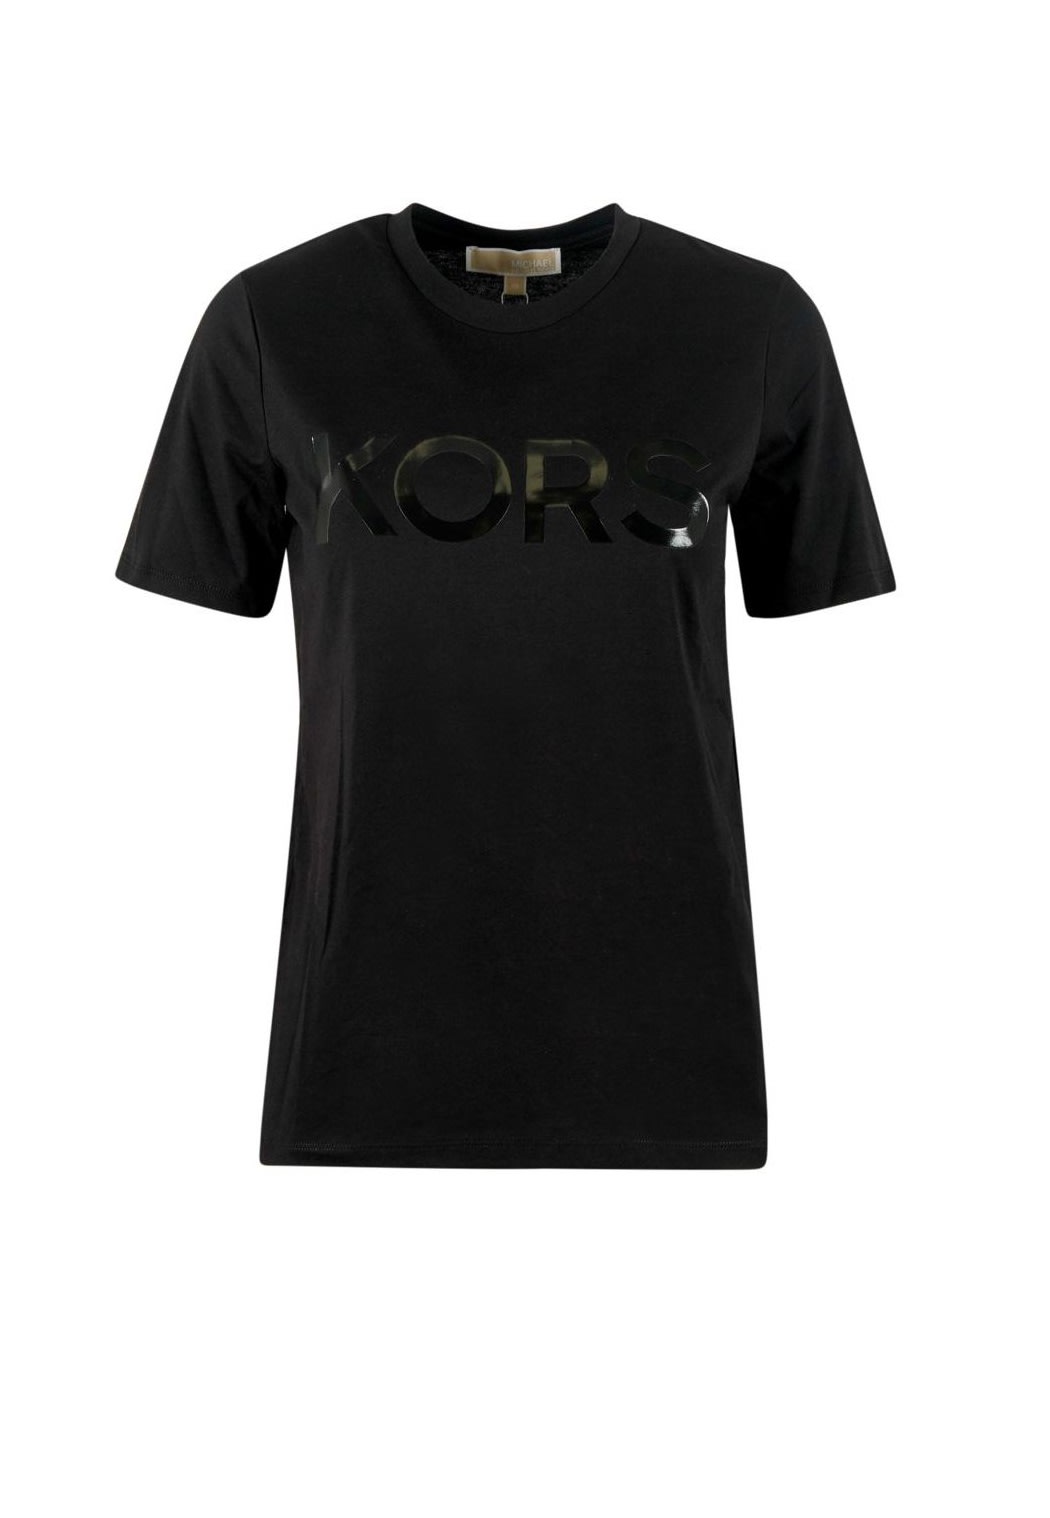 Michael Kors Collection Tonal Kors Classic Tshirt